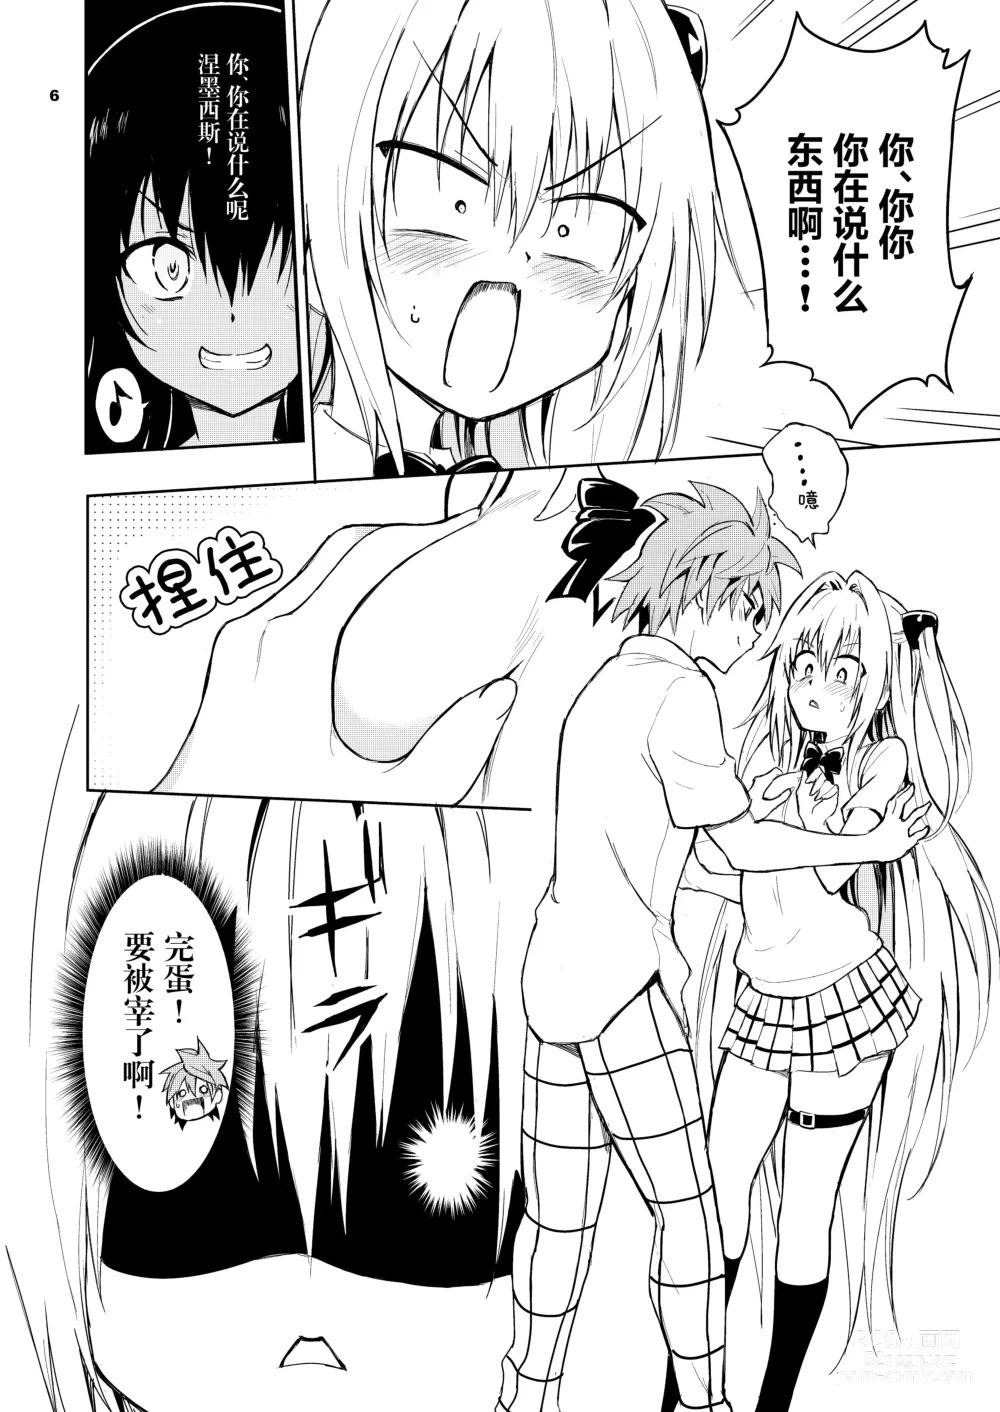 Page 7 of doujinshi Ecchii no wa Kirai desu ka?